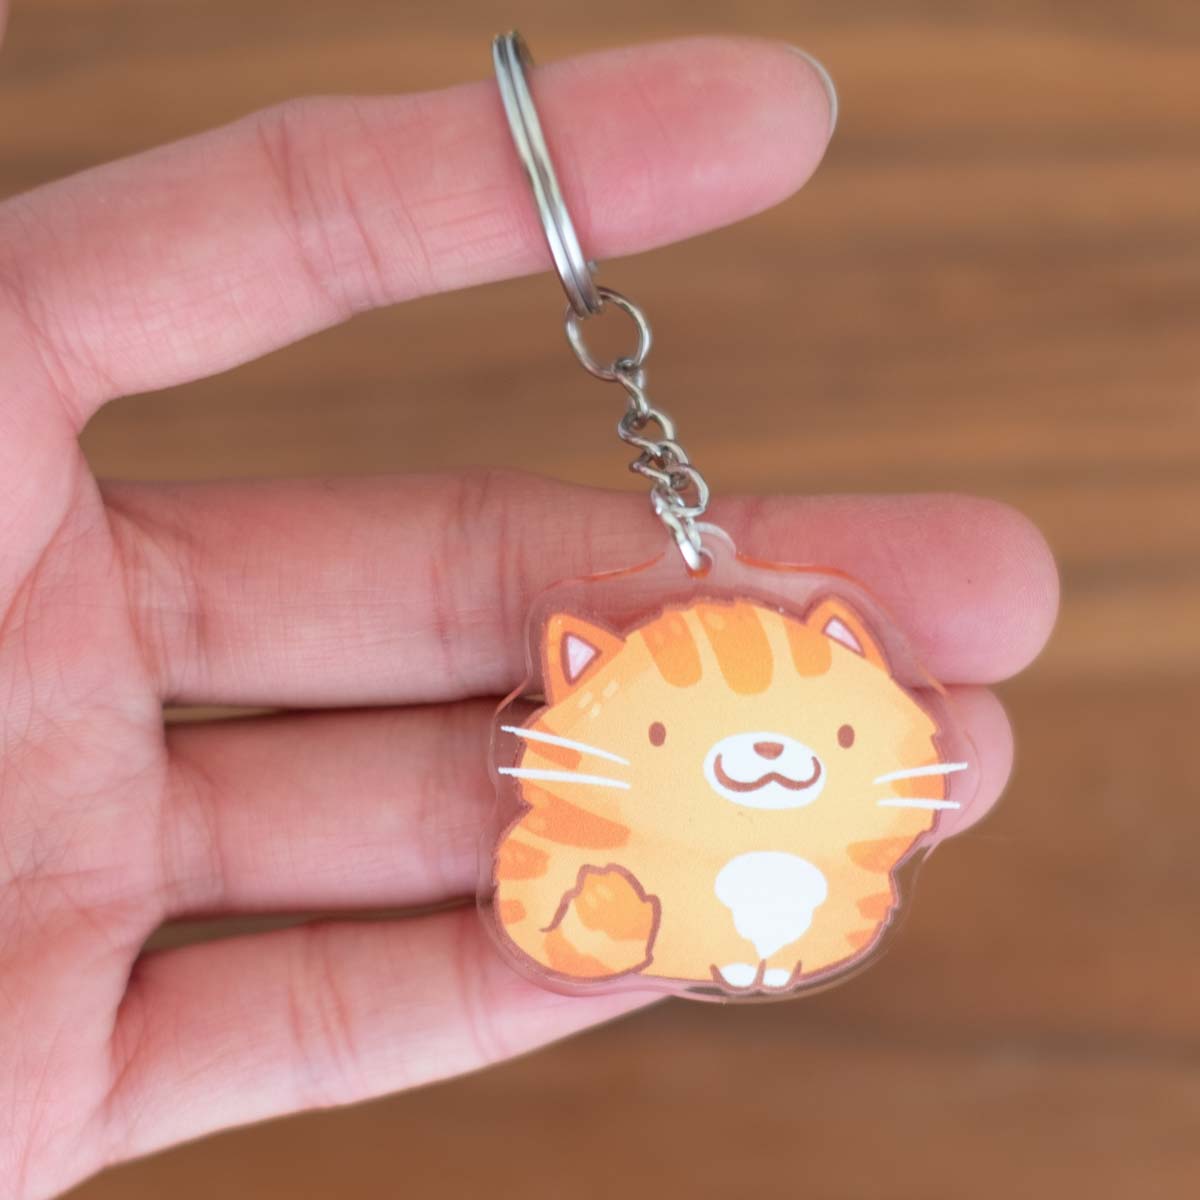 Keychain -  Cat, orange tabby